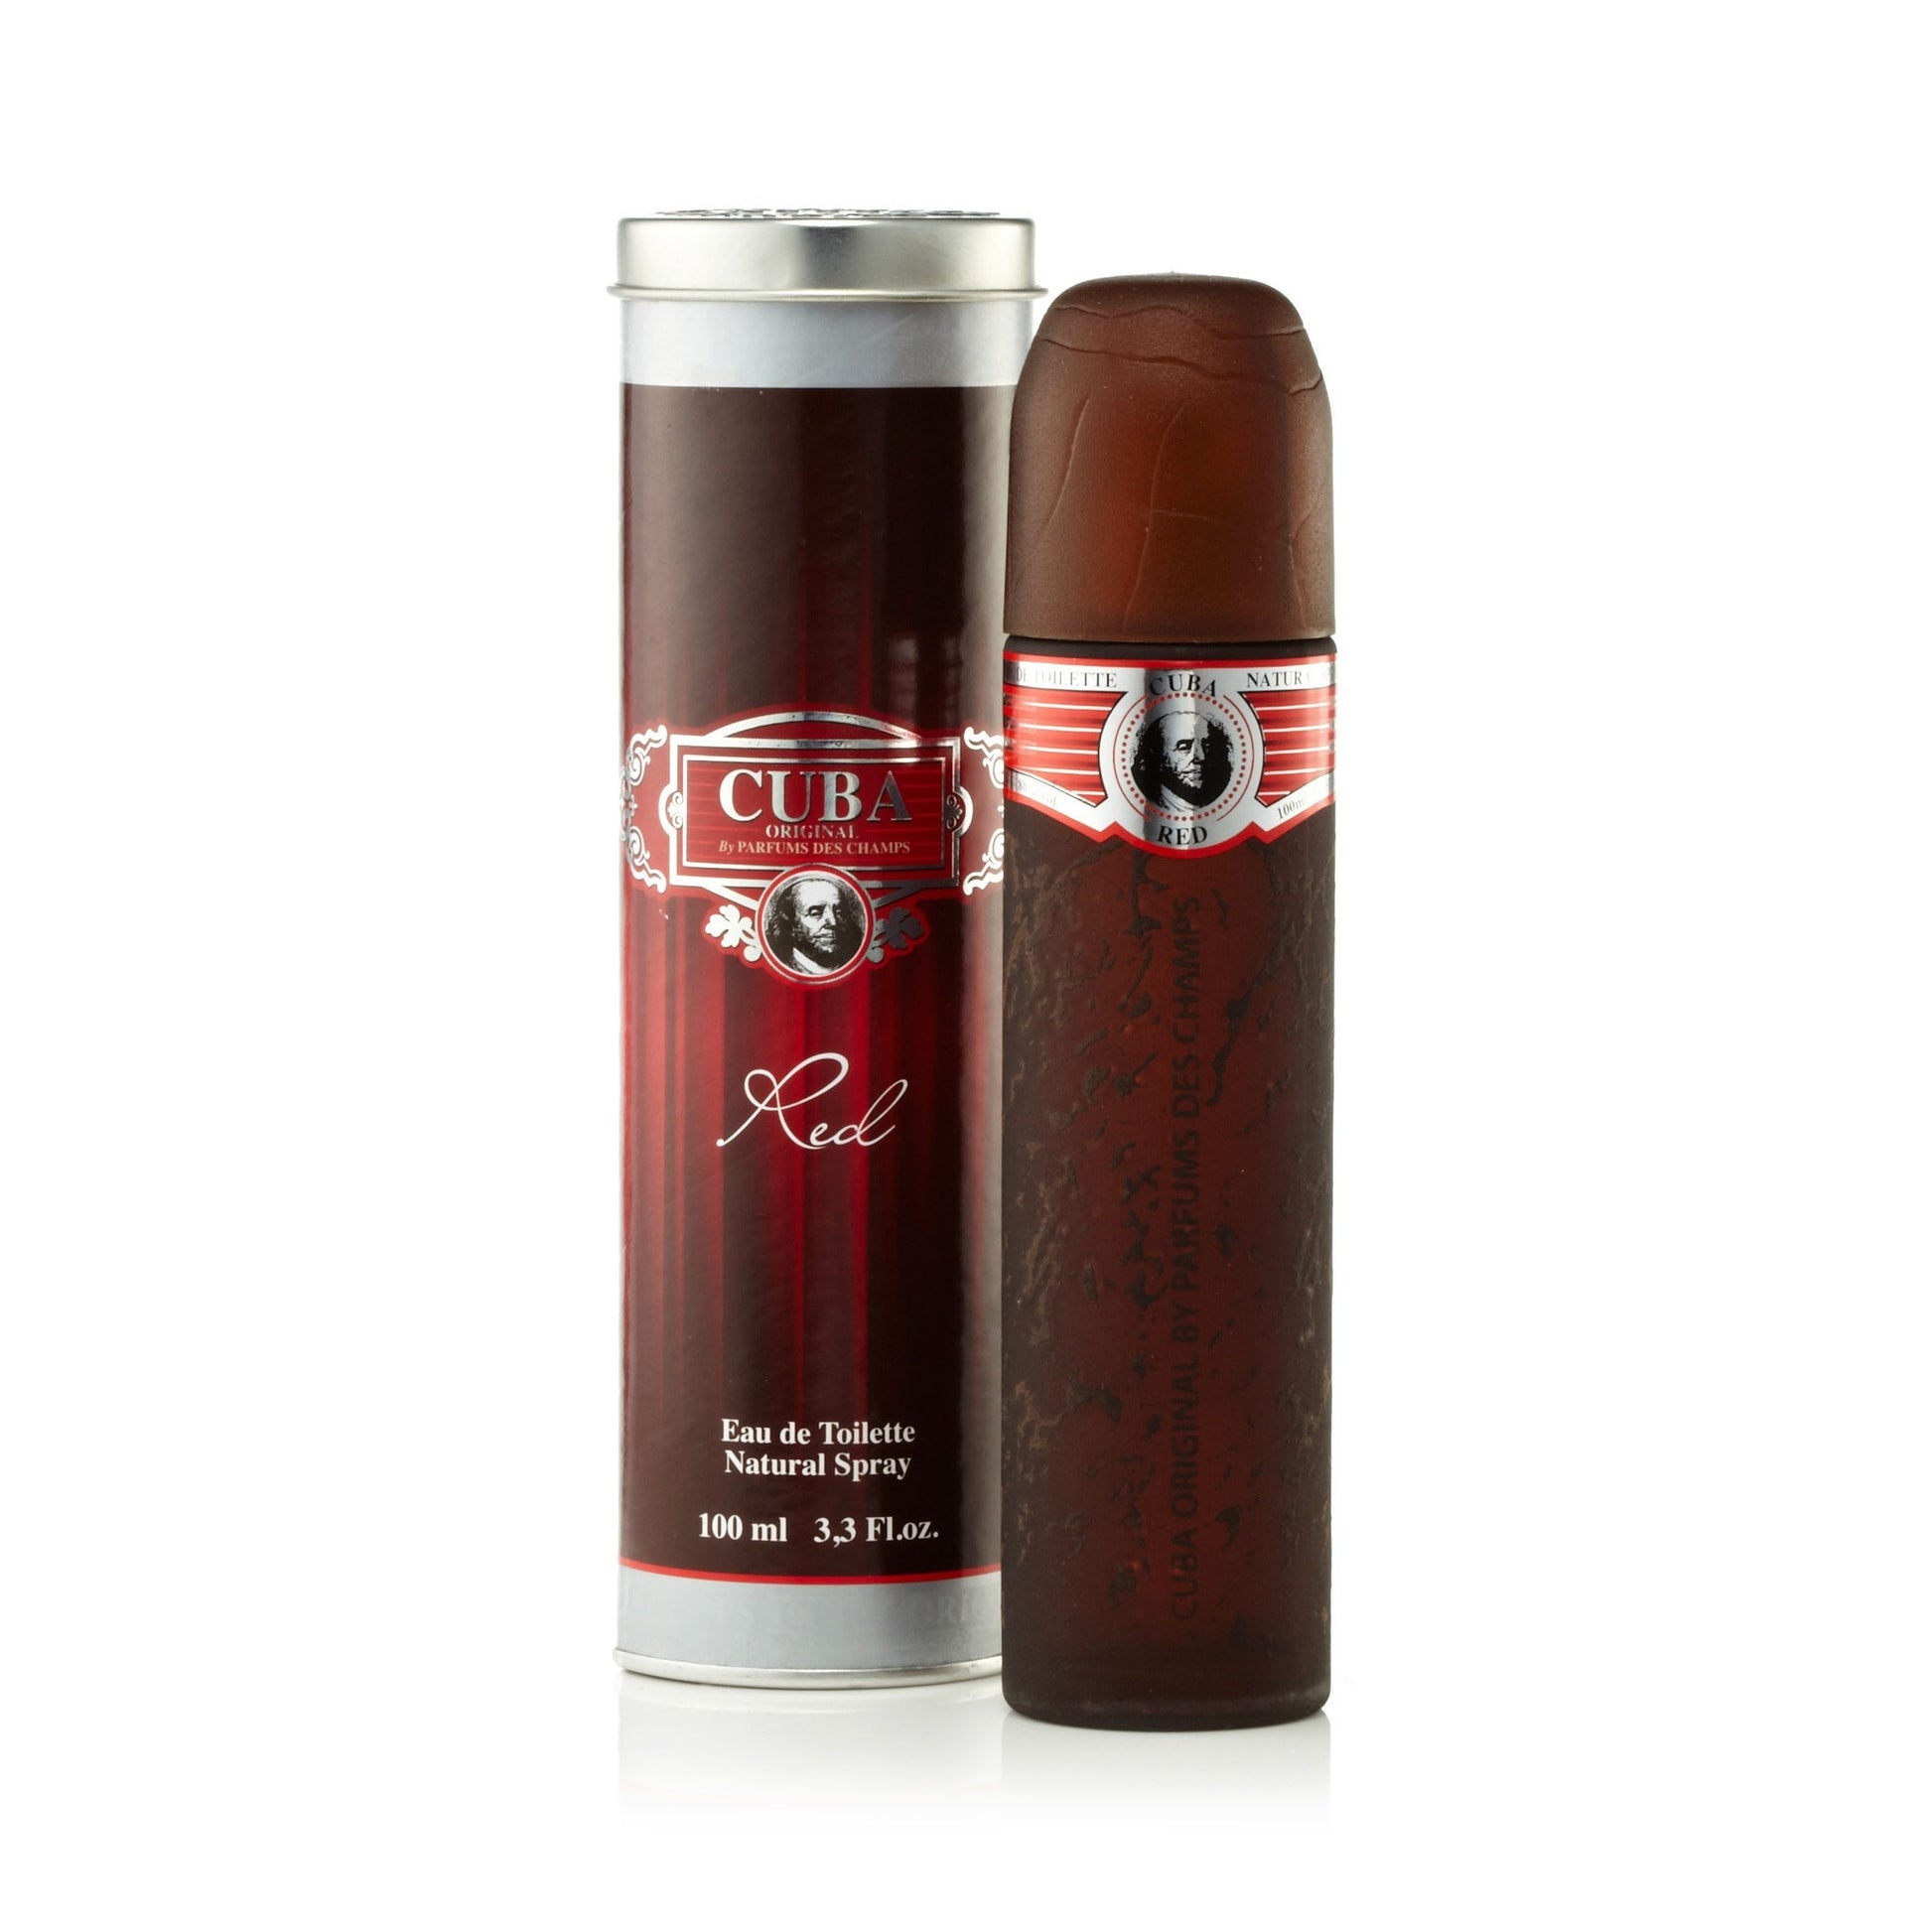 Red Eau de Toilette Spray for Men by Cuba 3.3 oz. Click to open in modal